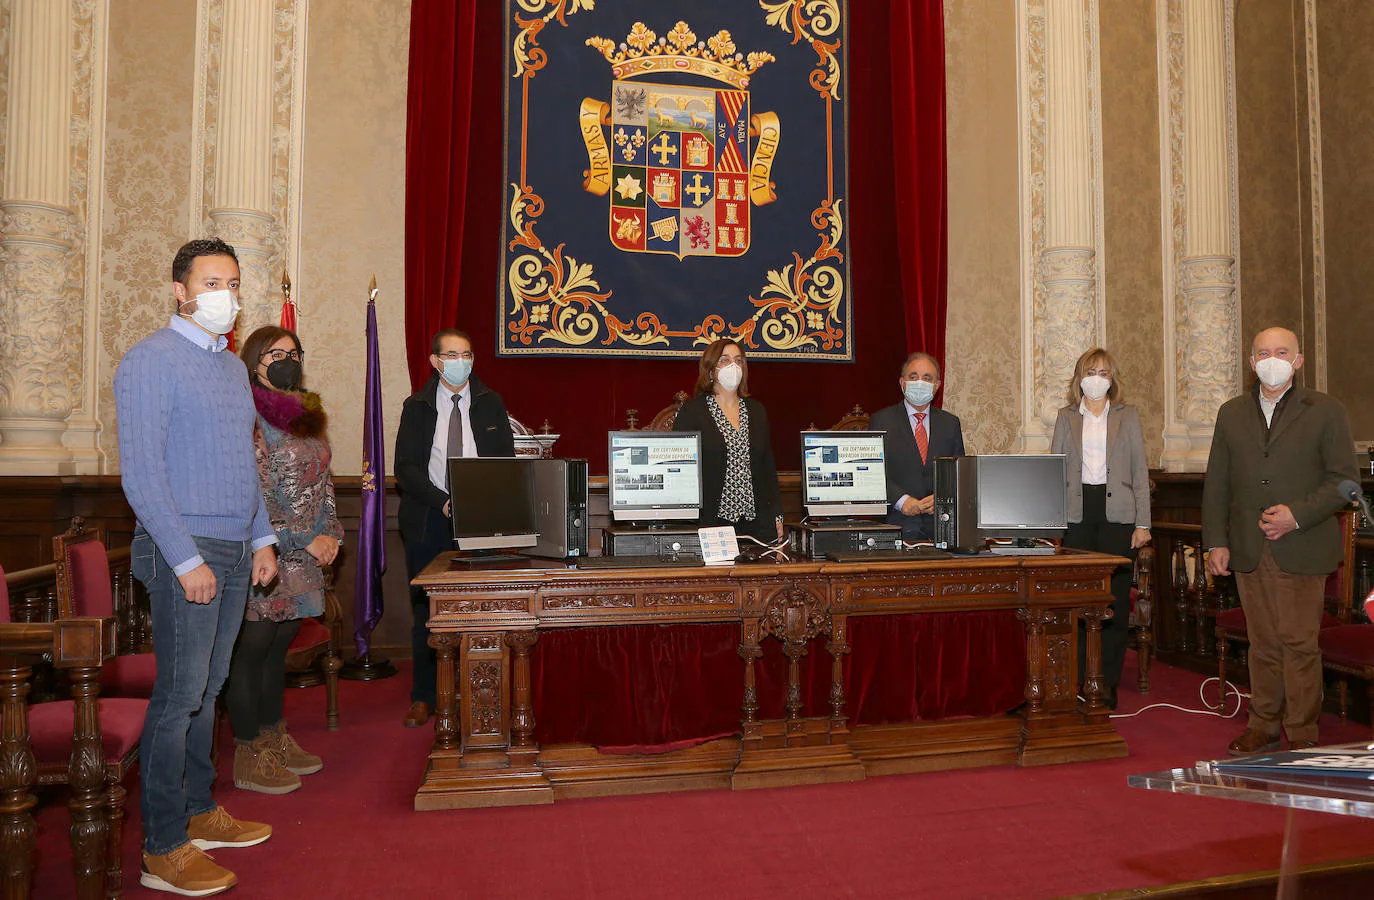 La Diputación dona 40 ordenadores en desuso para los colegios de Palencia